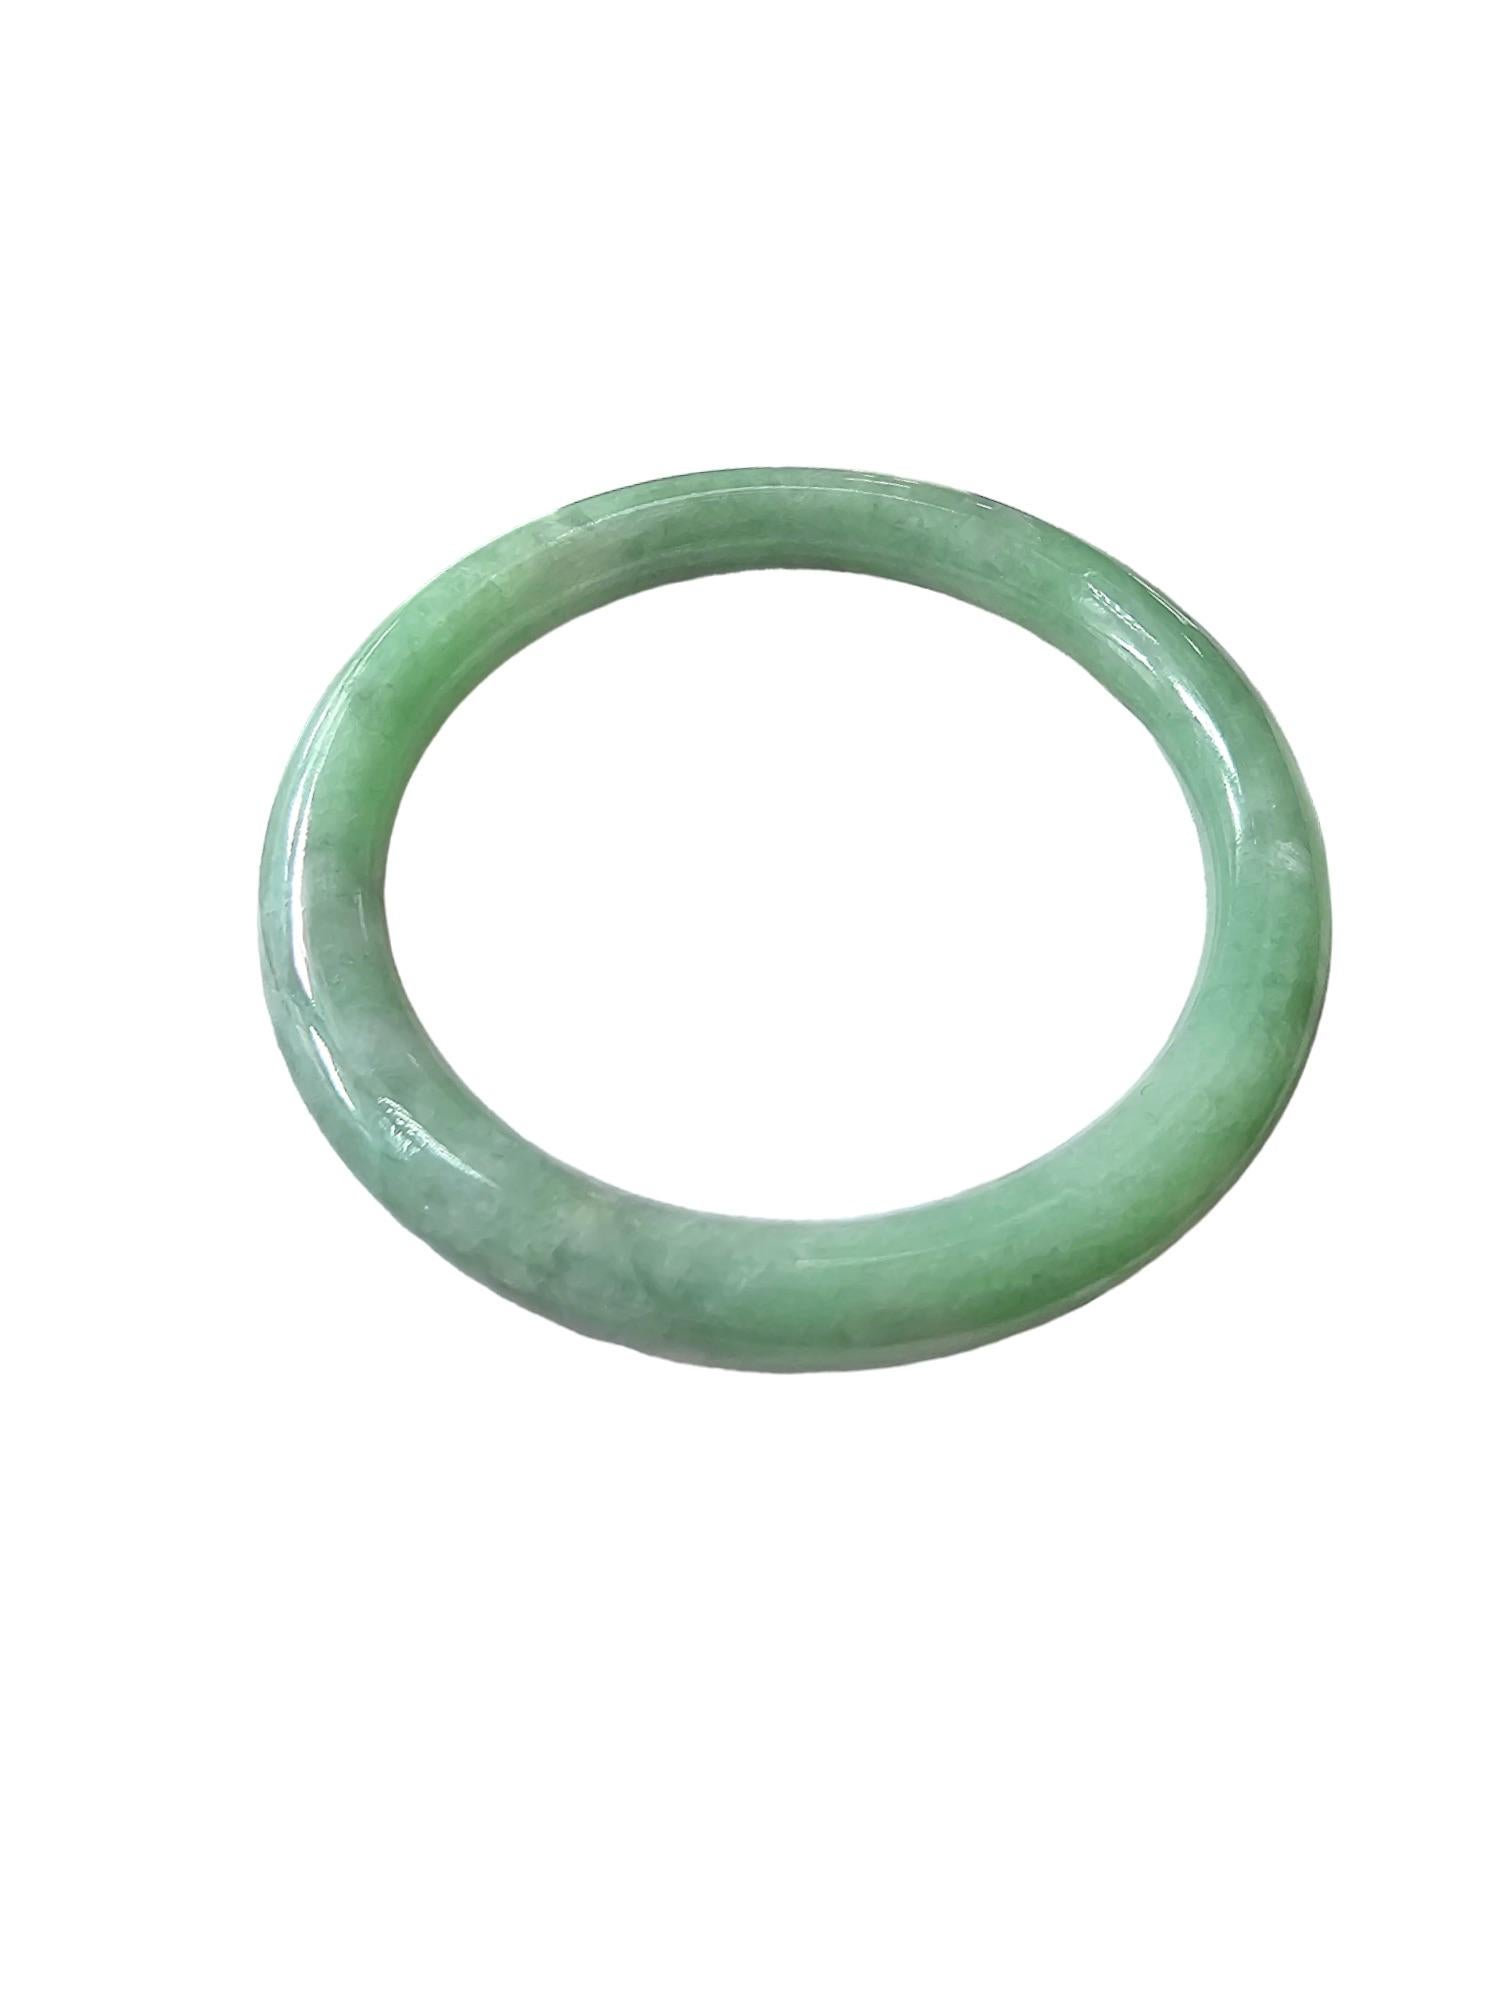 Burmesischer A-Jadeit Jade-Armreif; Grüner, grauer, weißer Jadeit 08809 - 100% entworfen, hergestellt und verarbeitet in Hongkong. Handgefertigt und maschinell geprüft.

Unsere 'Earth's' Bangle Bracelets sind allesamt Einzelstücke;

Dieses Stück ist